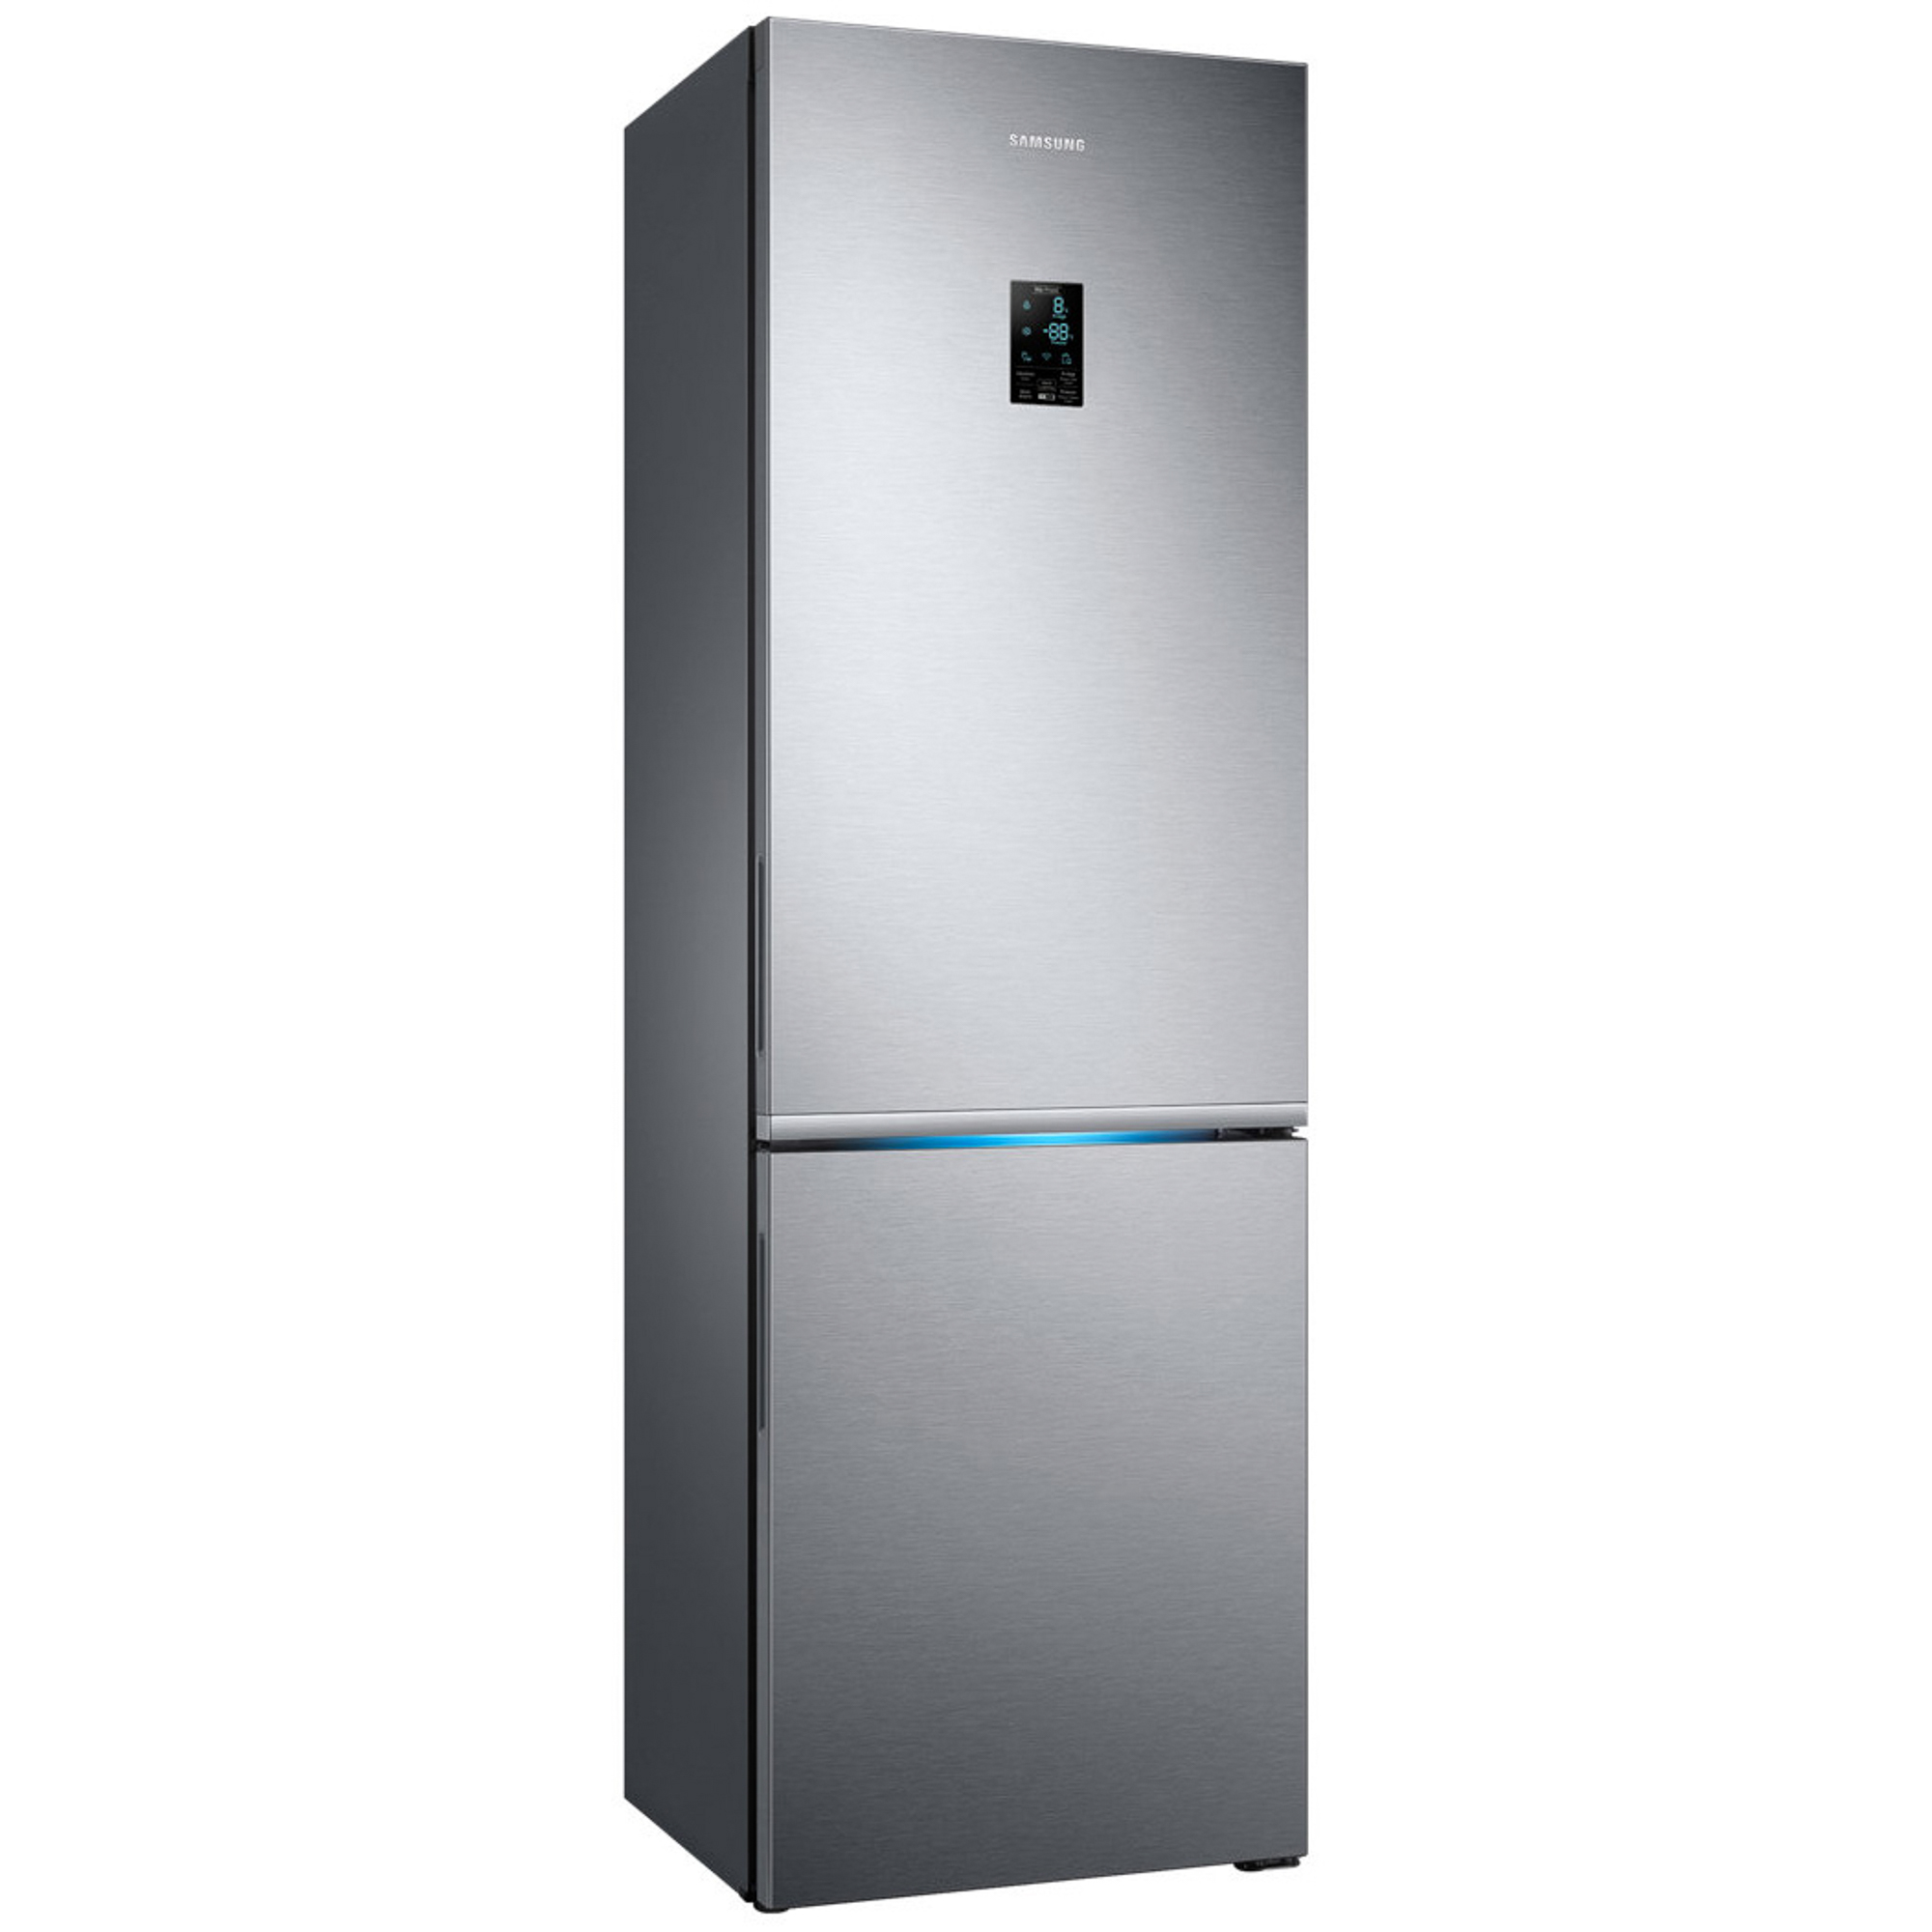 Холодильник Samsung RB34K6220S4 Silver, цвет серебристый RB34K6220S4/WT - фото 4